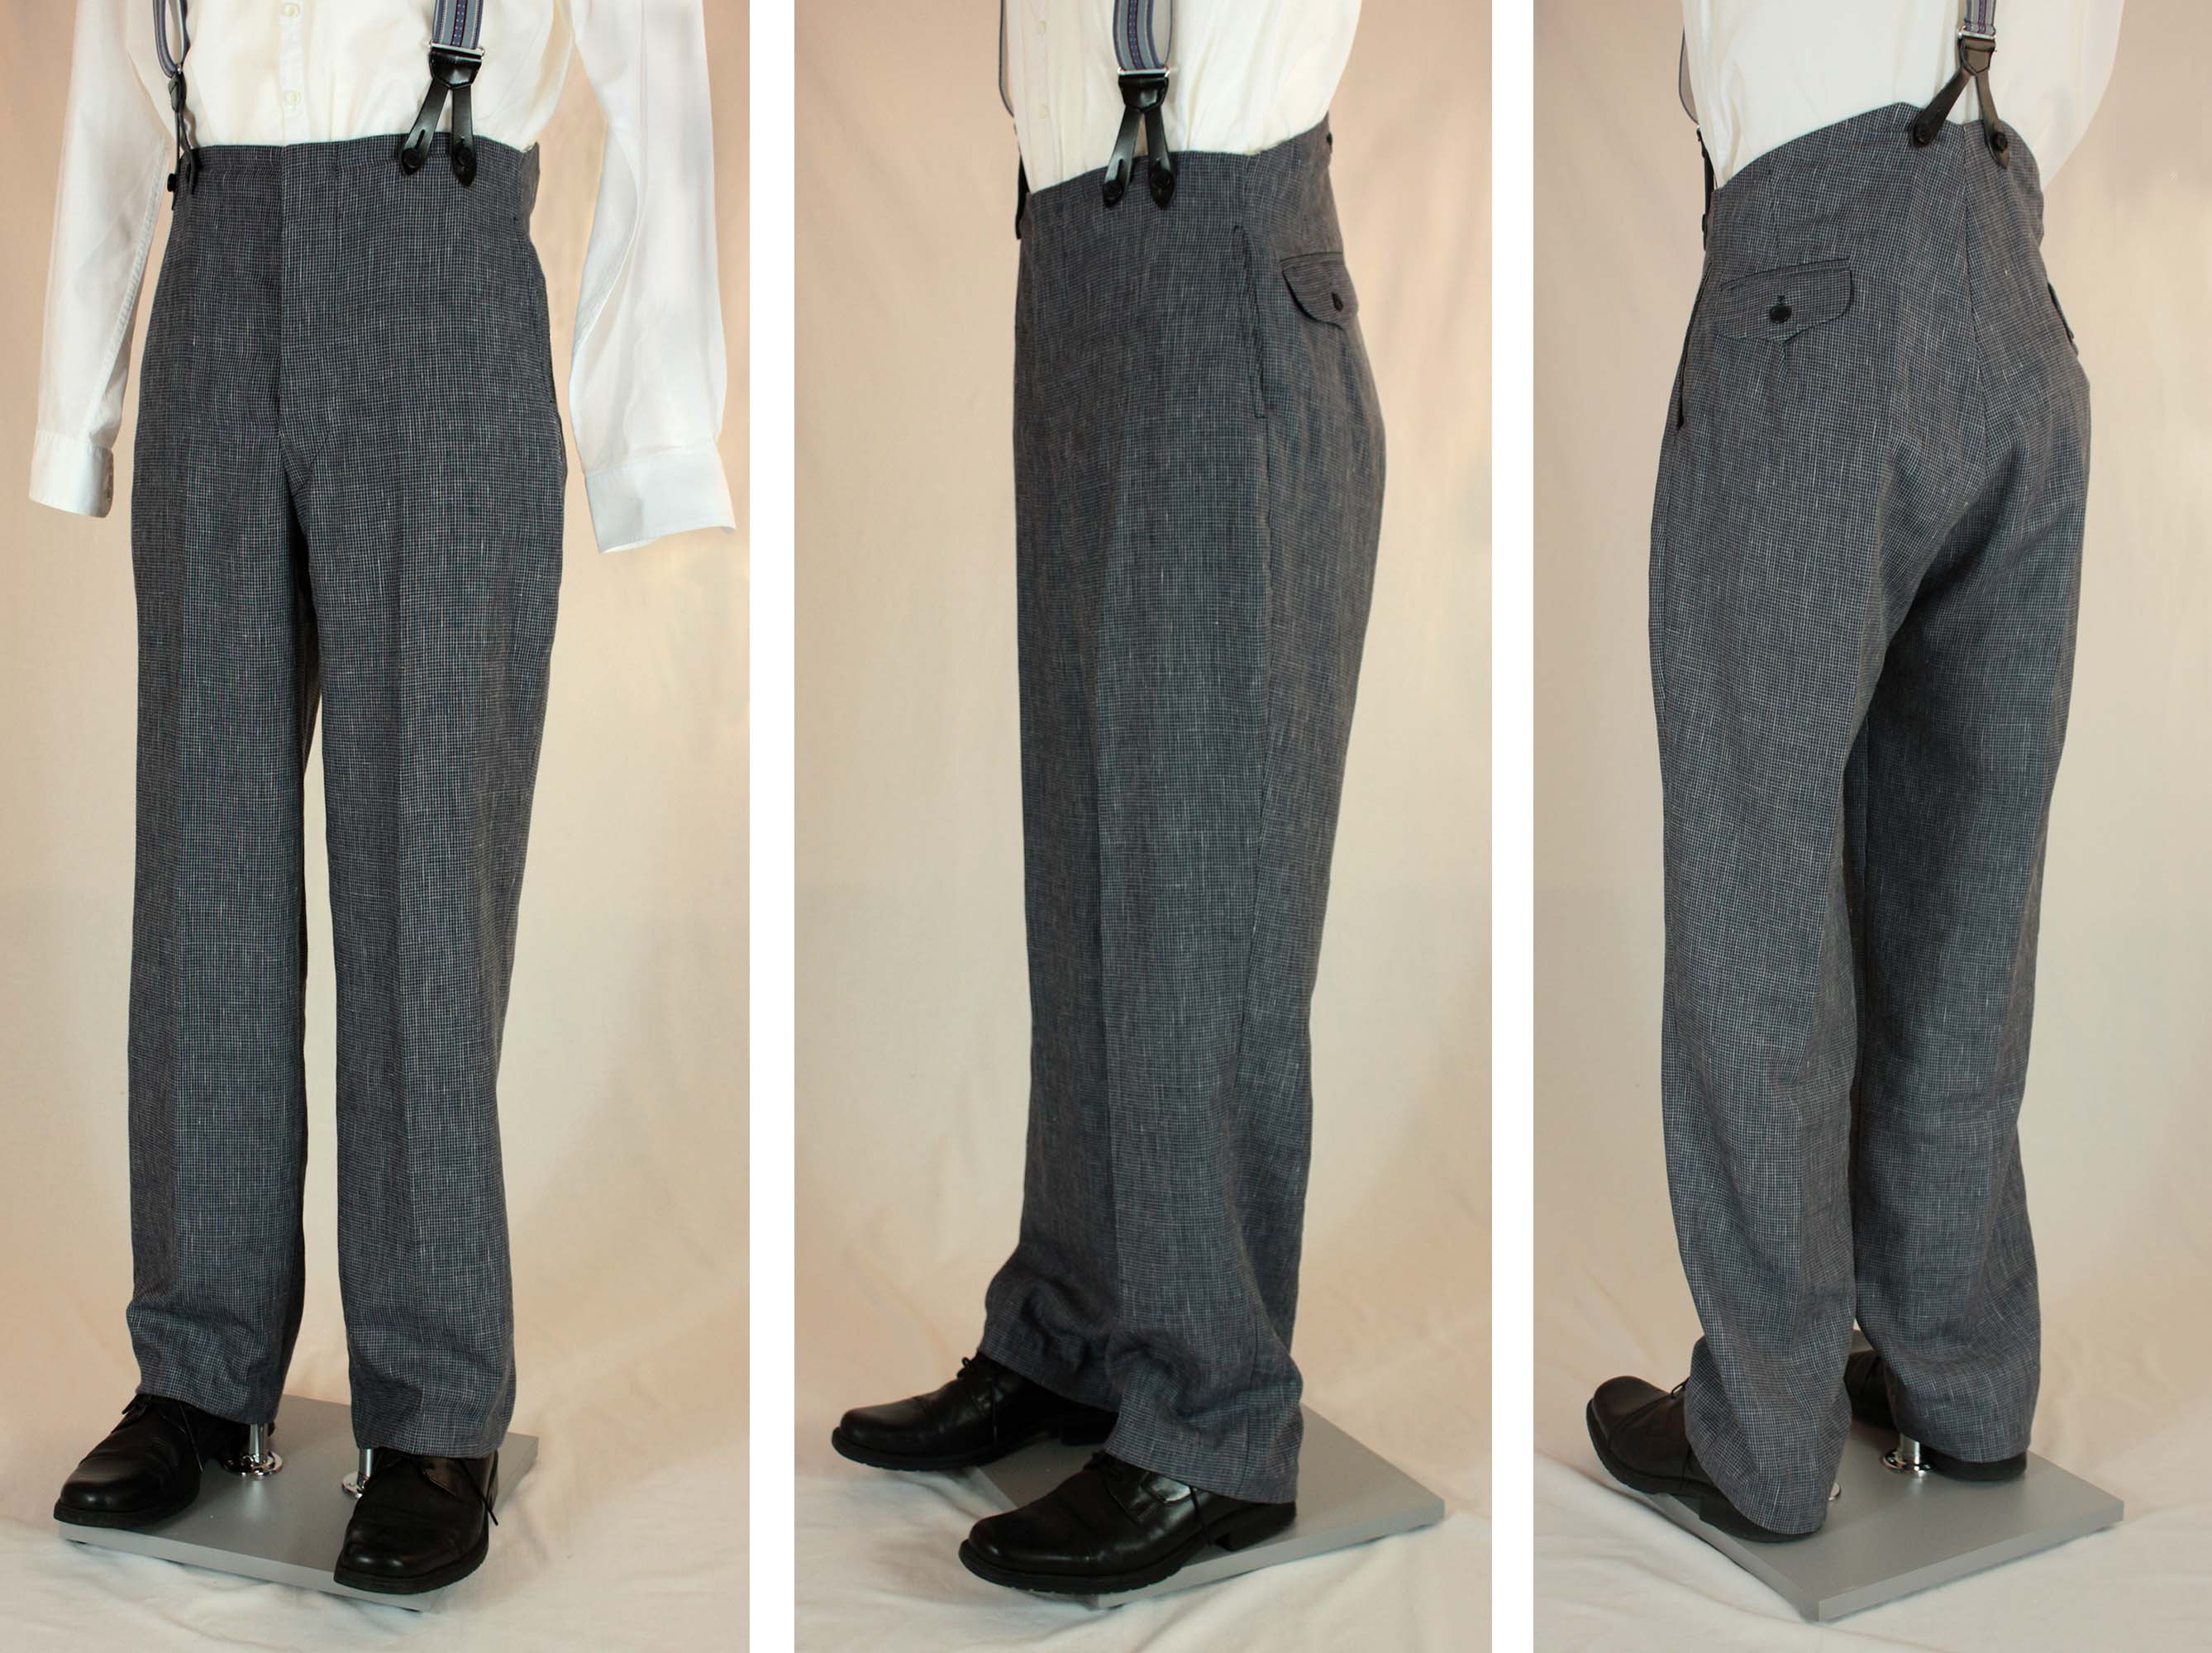 Basic Men's Trouser Block Pattern - Sizes 28-42